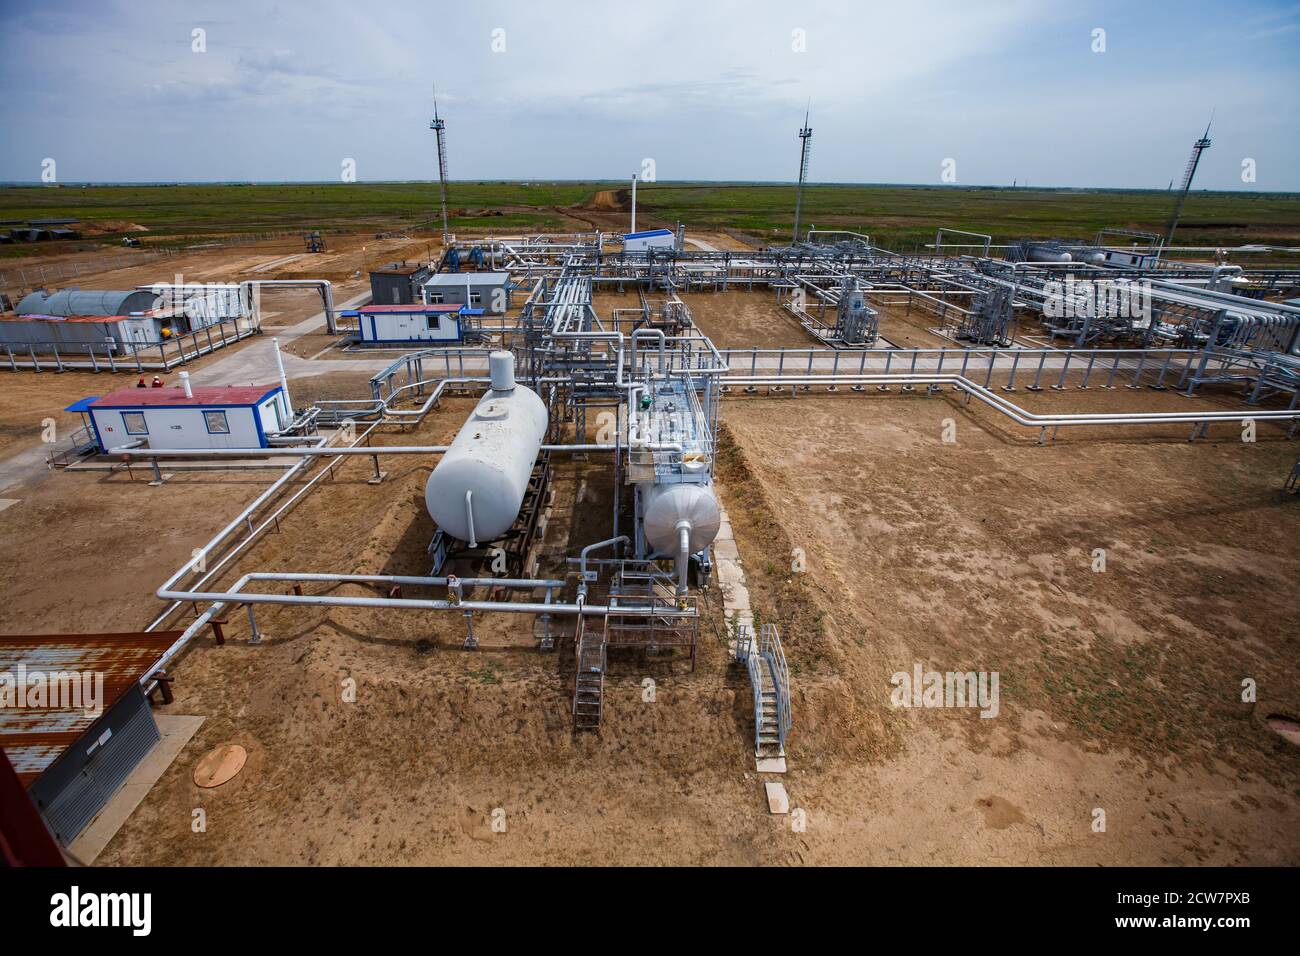 Raffinerie de pétrole dans les sables. Échangeurs thermiques, mâts légers et canalisations. Gisement de pétrole de Zhaik-Munai, Kazakhstan. Banque D'Images